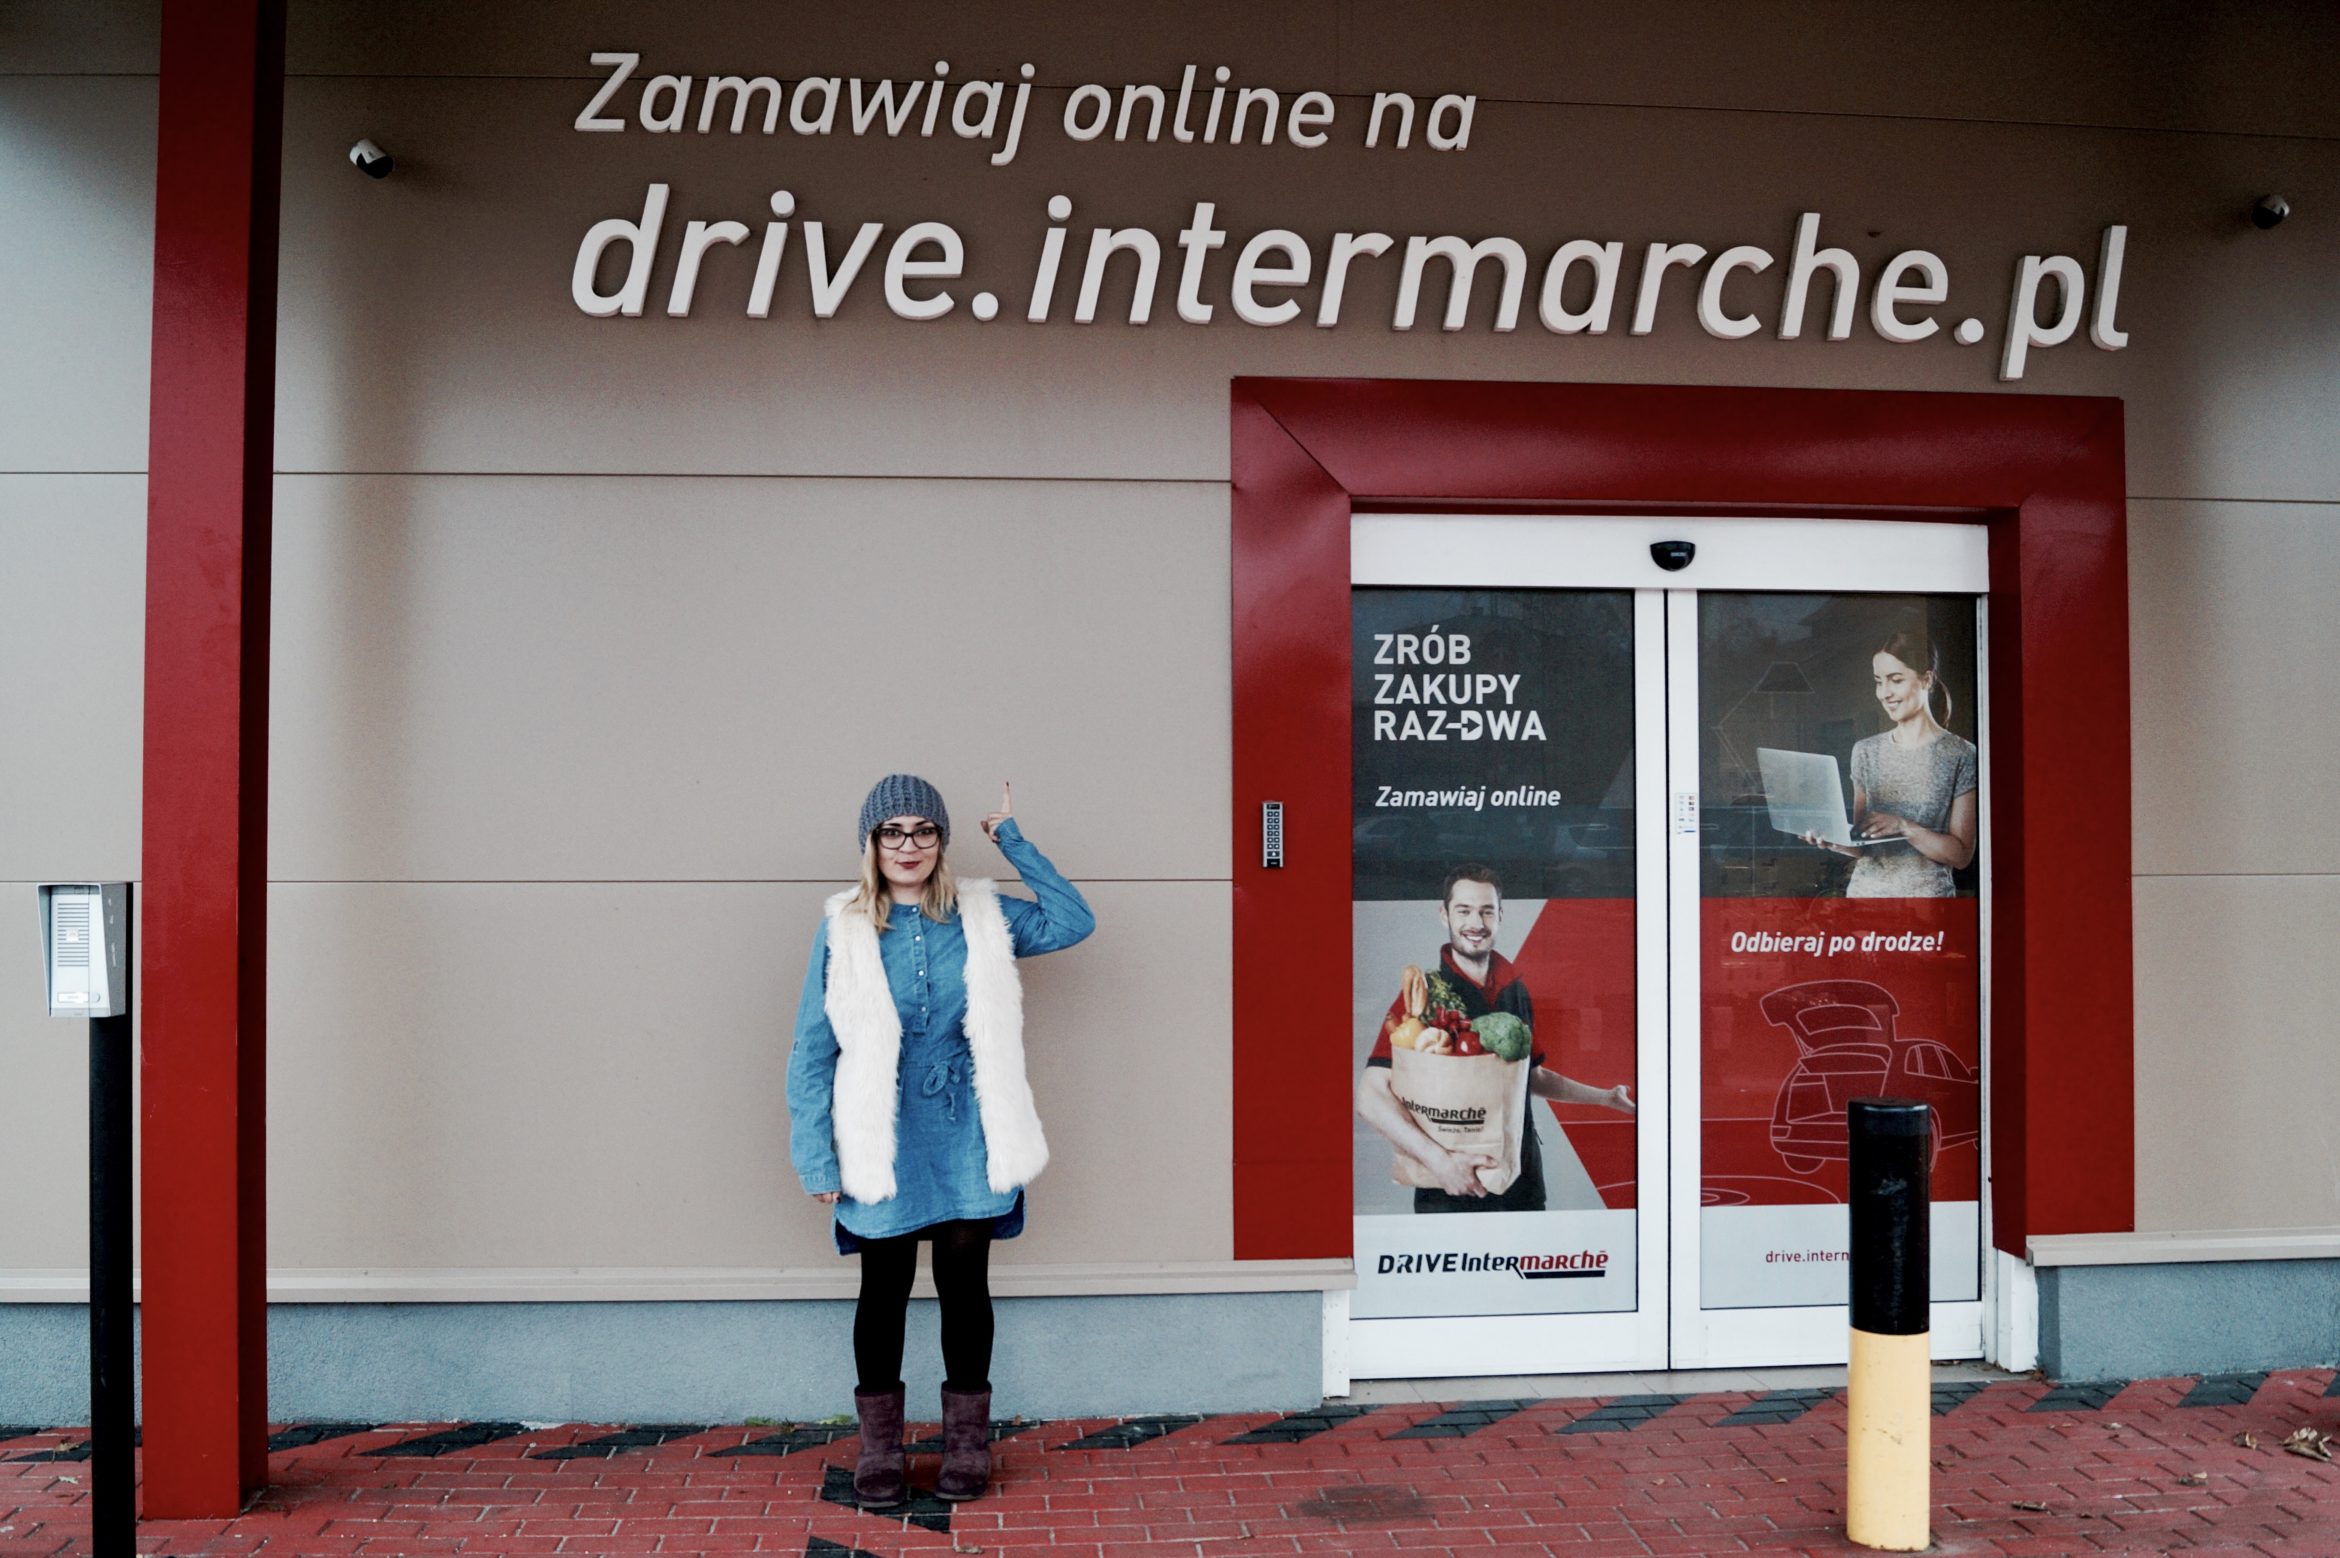 Intermarchedrive Nouveau Drive Intermarché Czyli Jak W Prosty Spos³b RobiÄ Zakupy